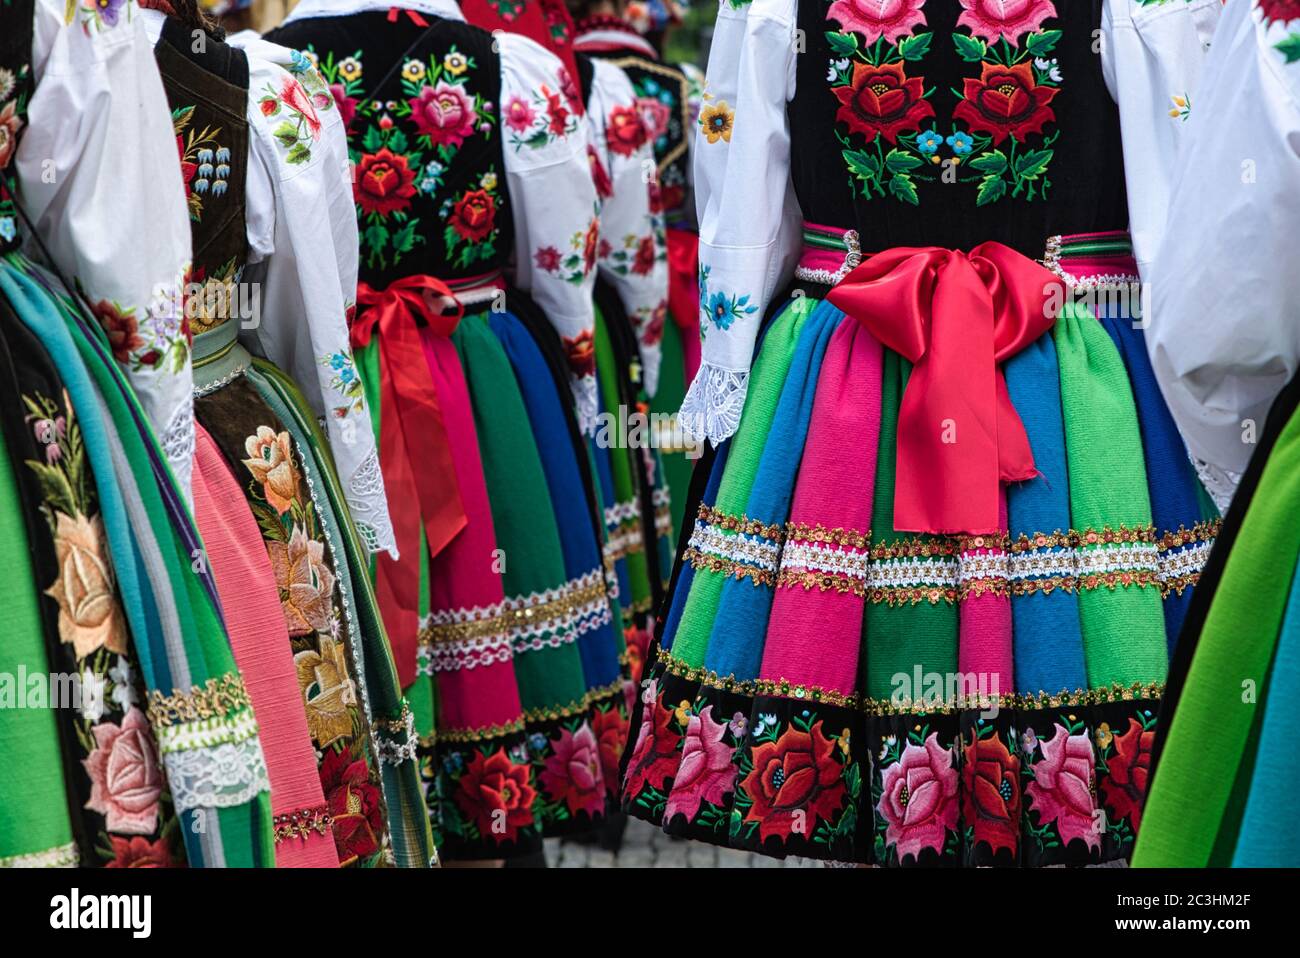 Mädchen in polnischen nationalen Volkstrachten aus der Region Lowicz während der jährlichen Fronleichnamsprozession gekleidet. Traditionelle bunt gestreifte Volksröcke Stockfoto